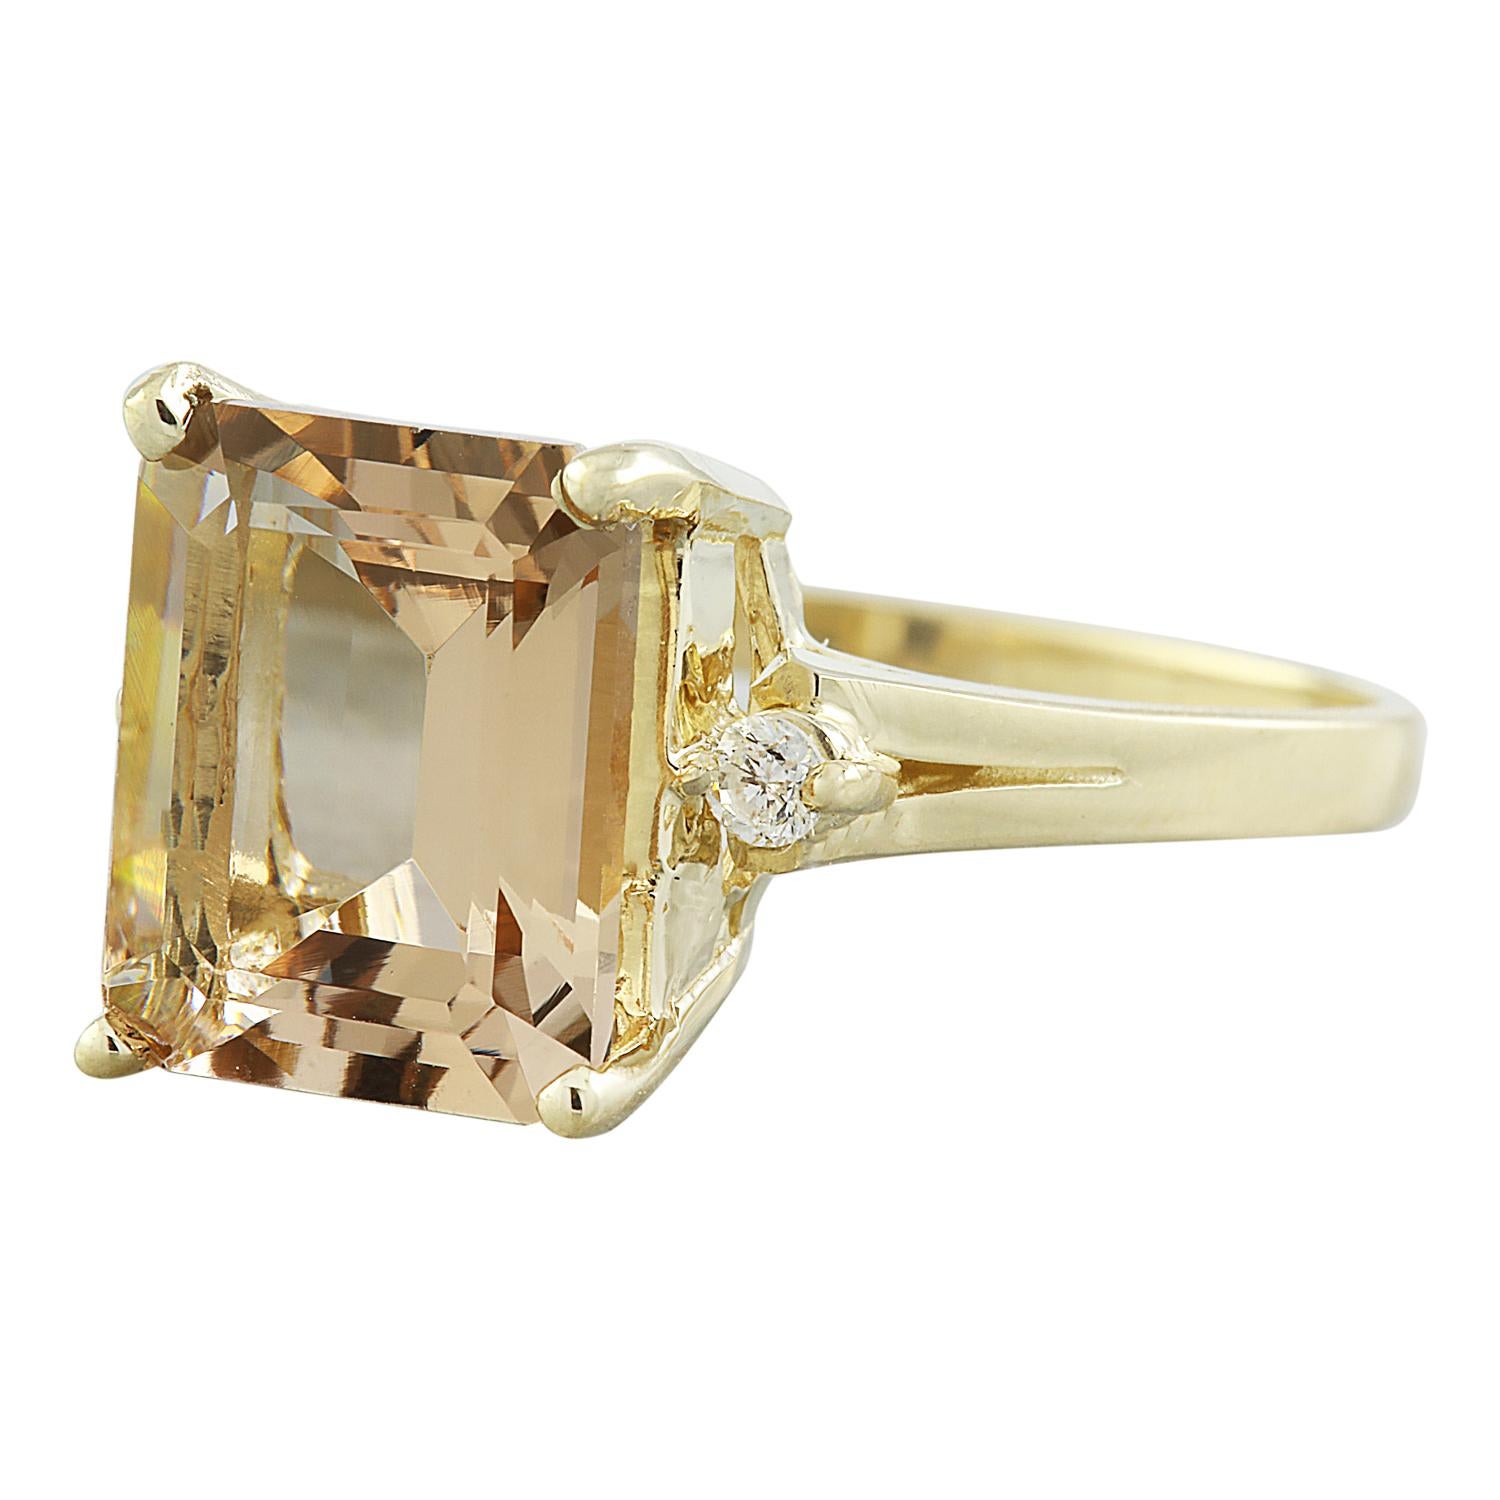 Wir präsentieren ein atemberaubendes Meisterwerk, das zeitlose Eleganz und Raffinesse ausstrahlt - den 2,26-Karat-Morganit-Ring aus massivem Gelbgold mit Diamanten in 14 Karat. Dieser Ring ist mit 14 Karat gestempelt und verkörpert den Inbegriff von